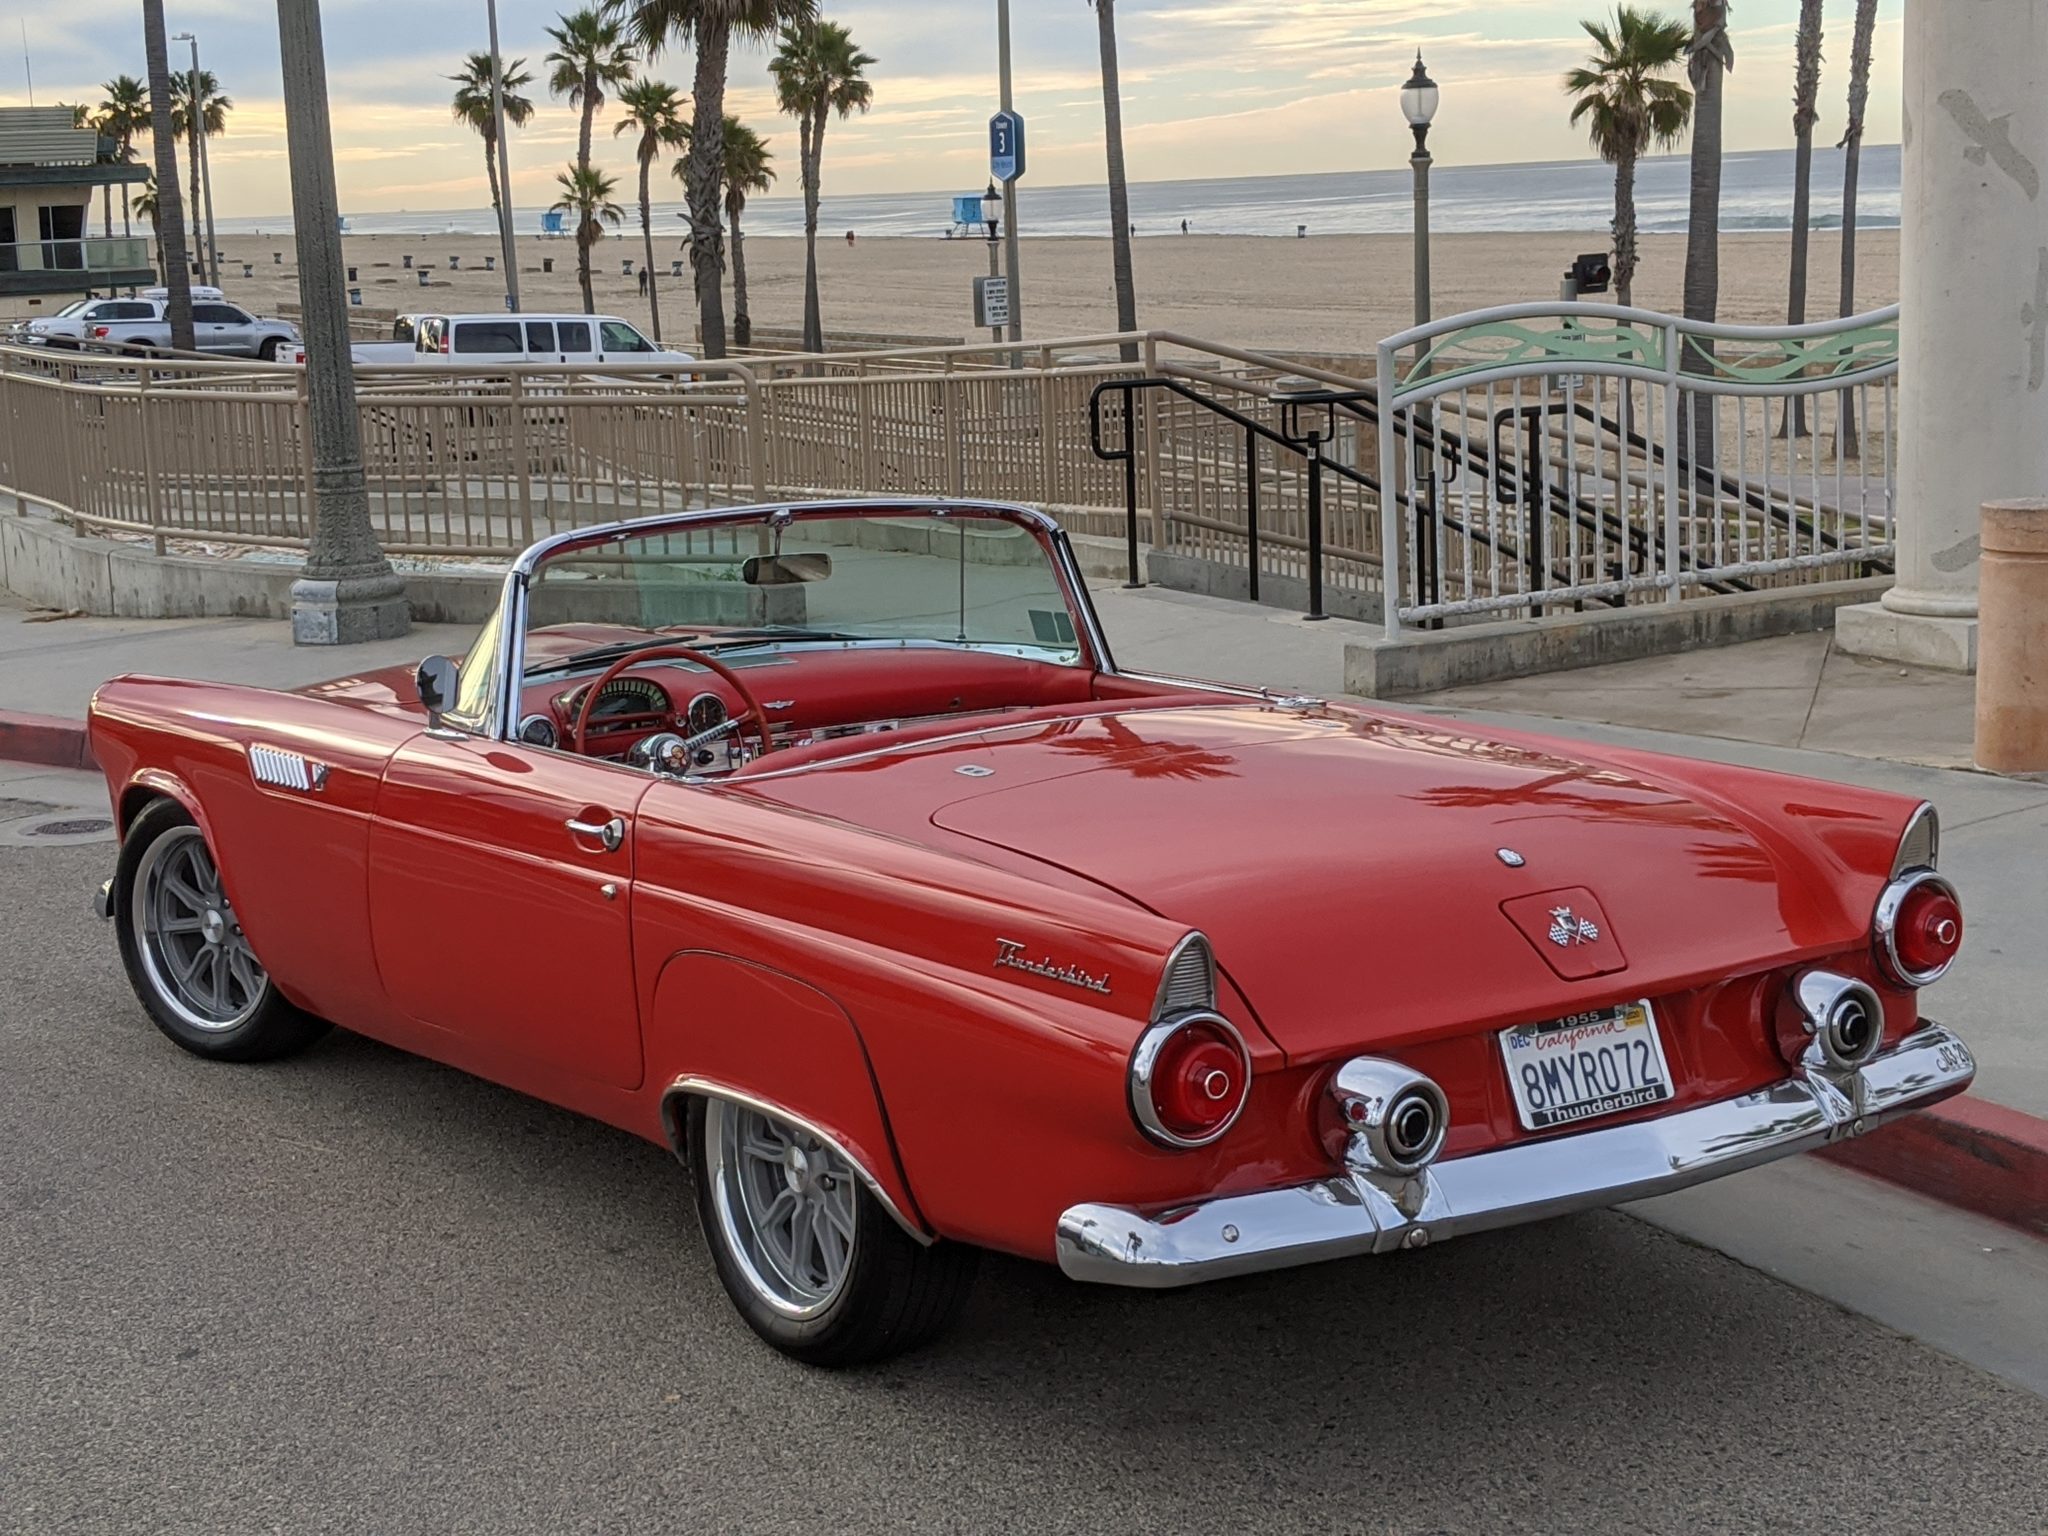 1955 Ford Thunderbird on the Beach